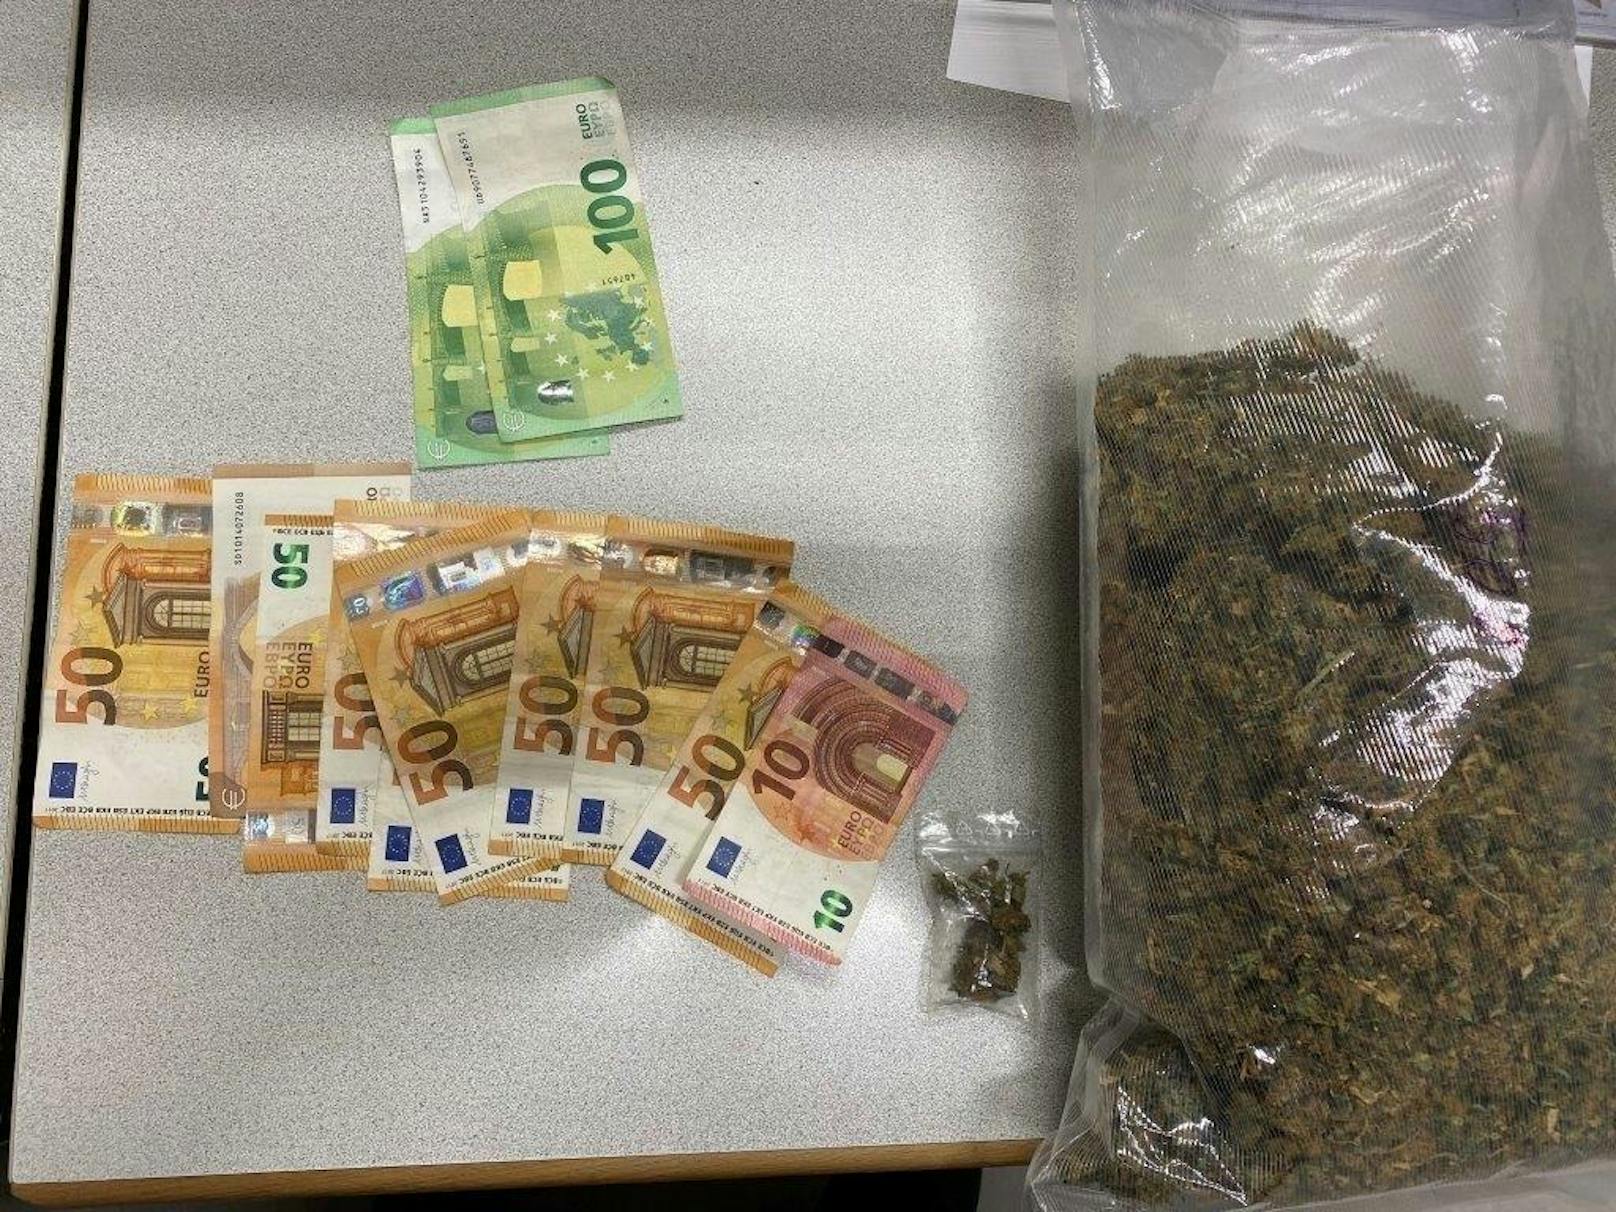 In einem Fahrzeug fanden die Beamten ein halbes Kilogramm Cannabis. Der 25-Jährige Lenker wurde festgenommen.